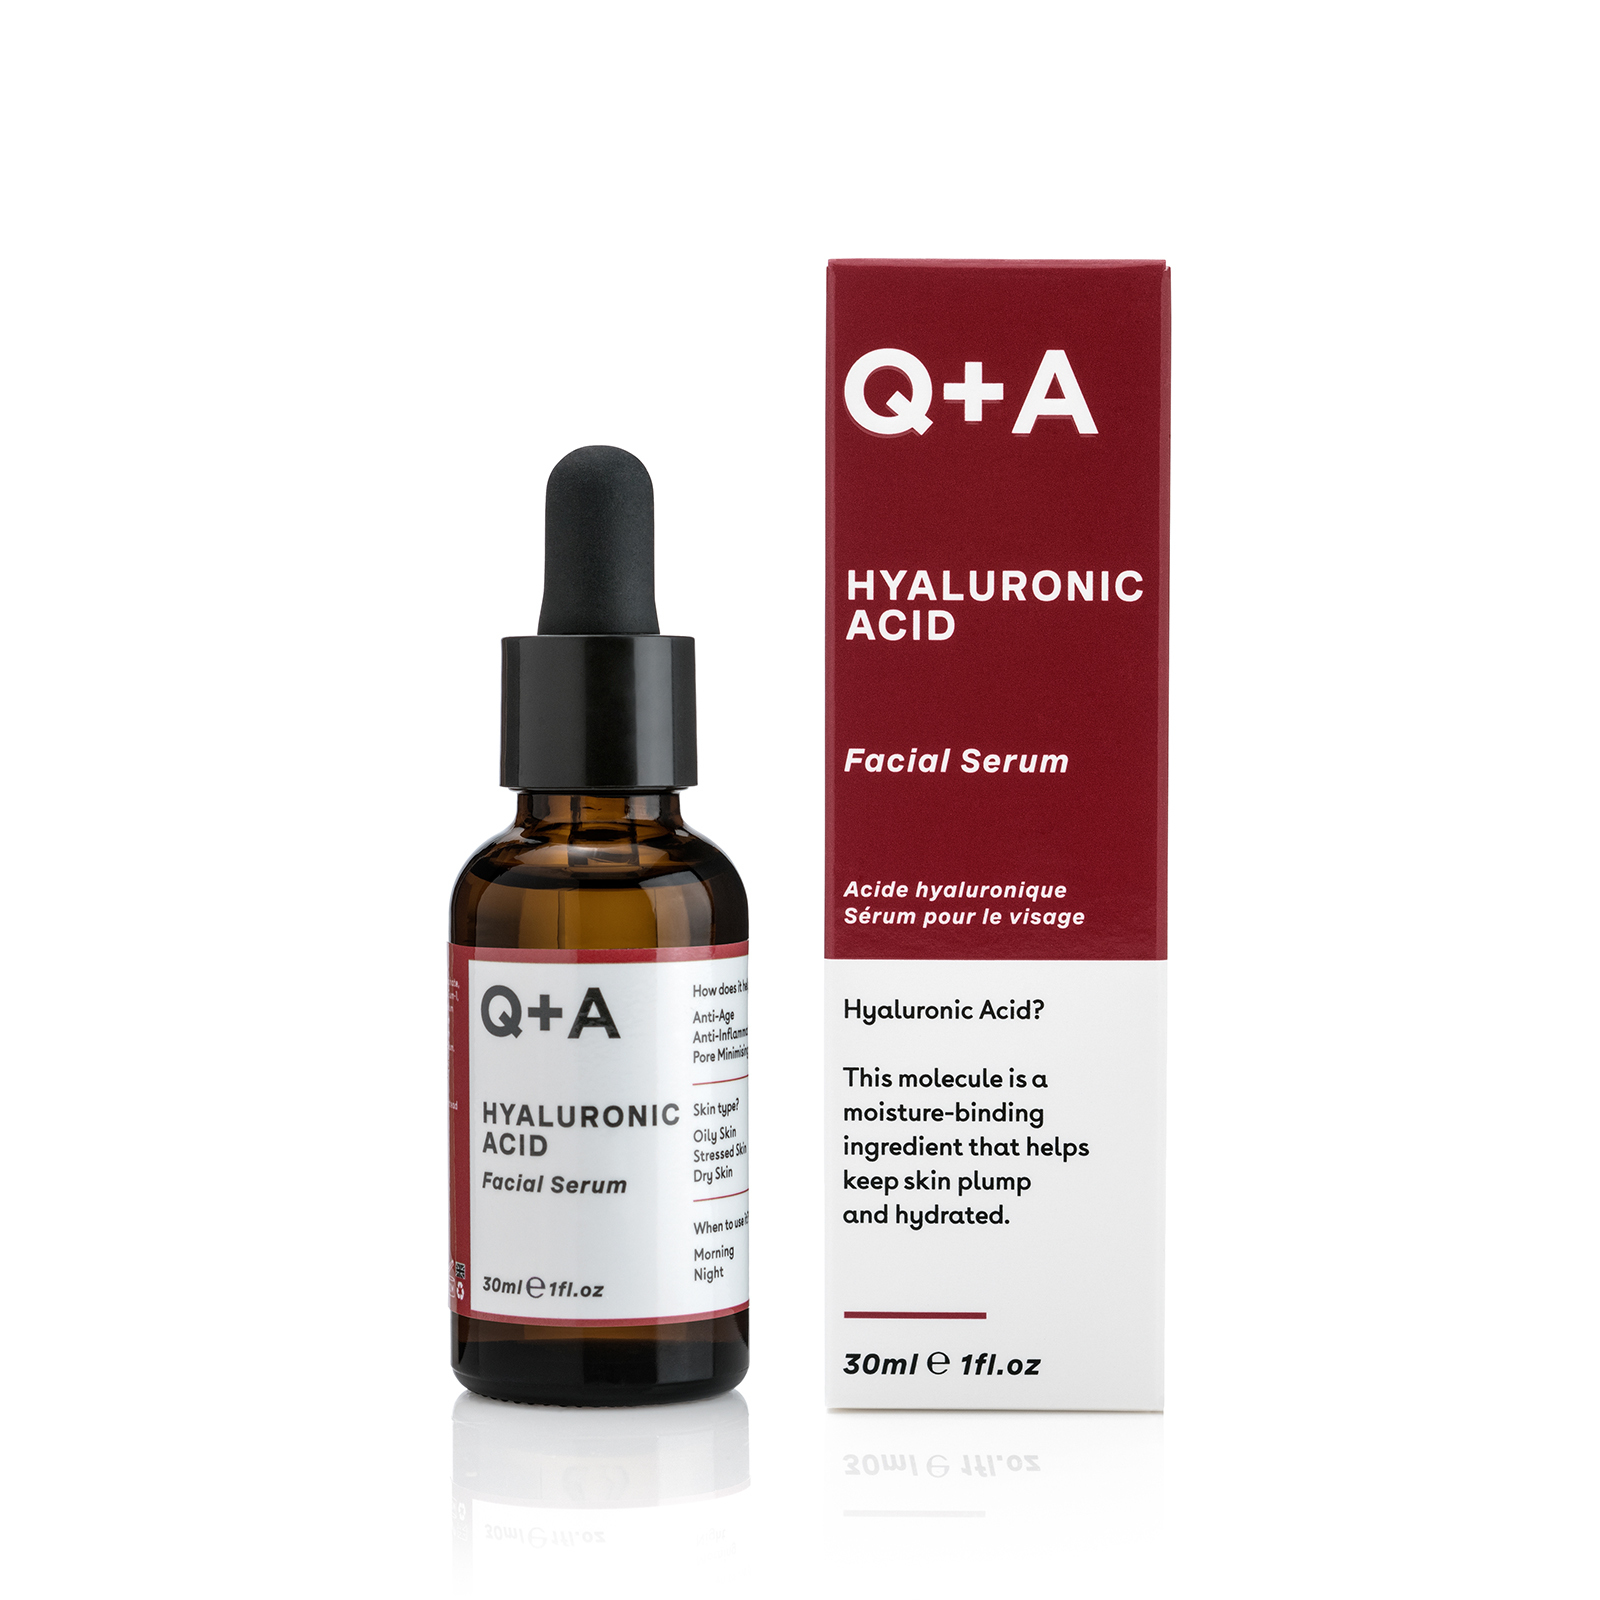 Q+A Hyaluronic Acid Сыворотка для лица 30 ml., фото 1